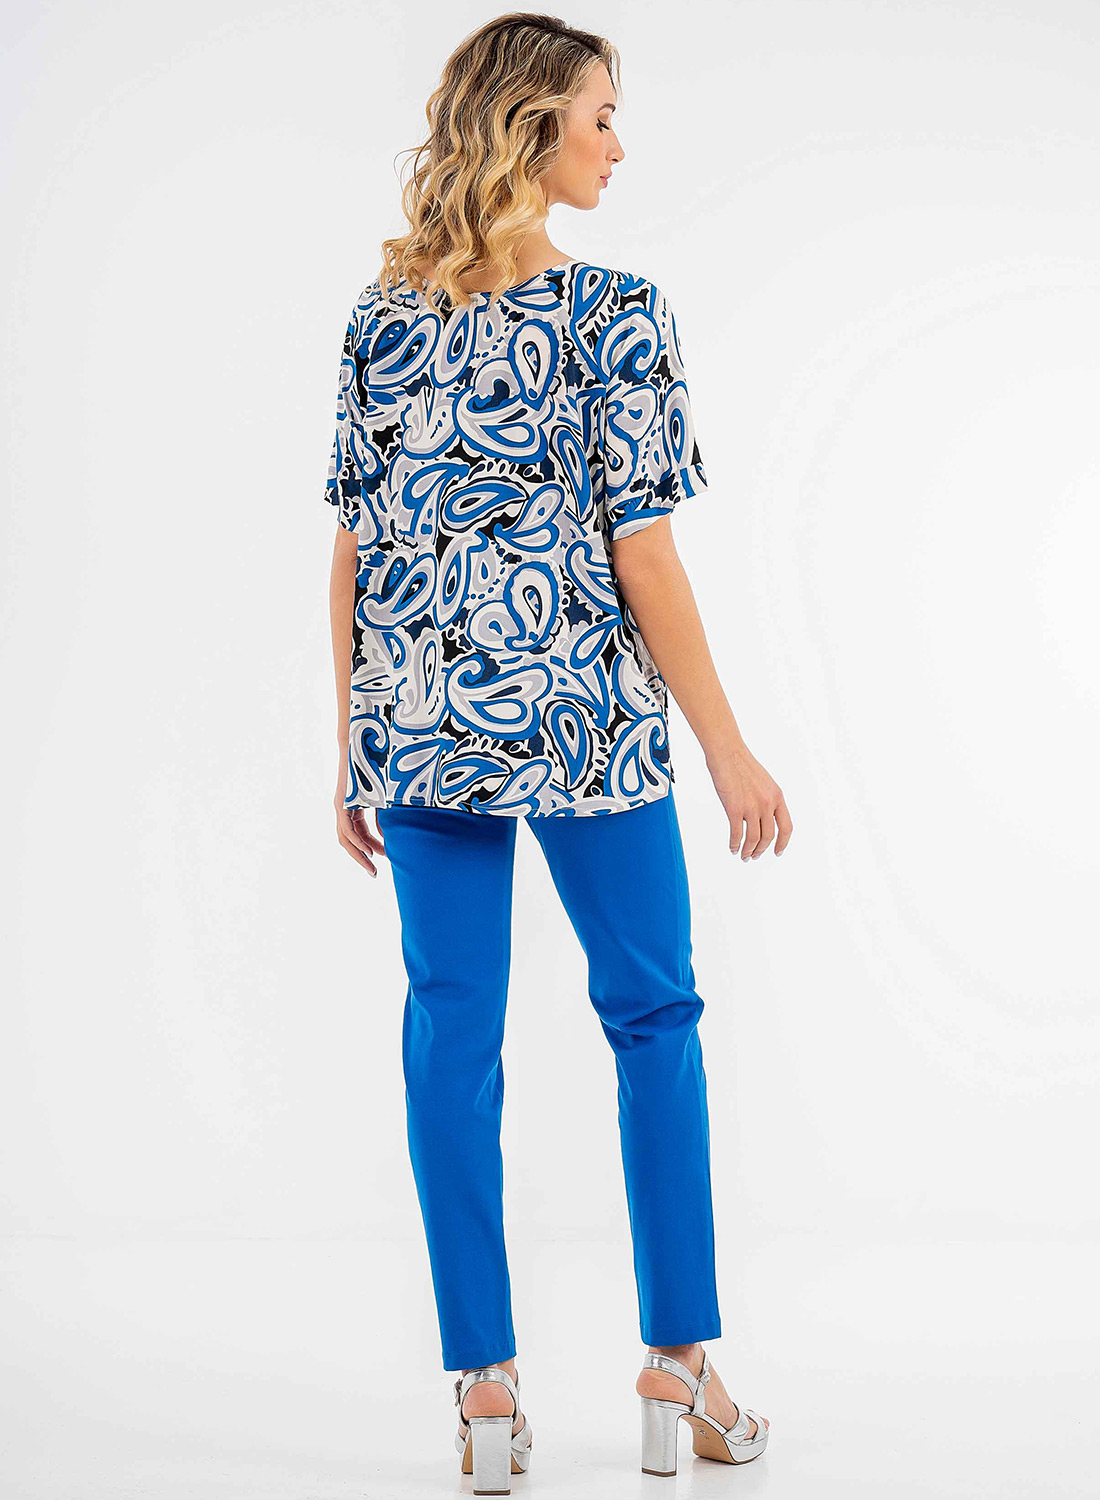 Μοδάτη μπλούζα με μπλε σχέδια